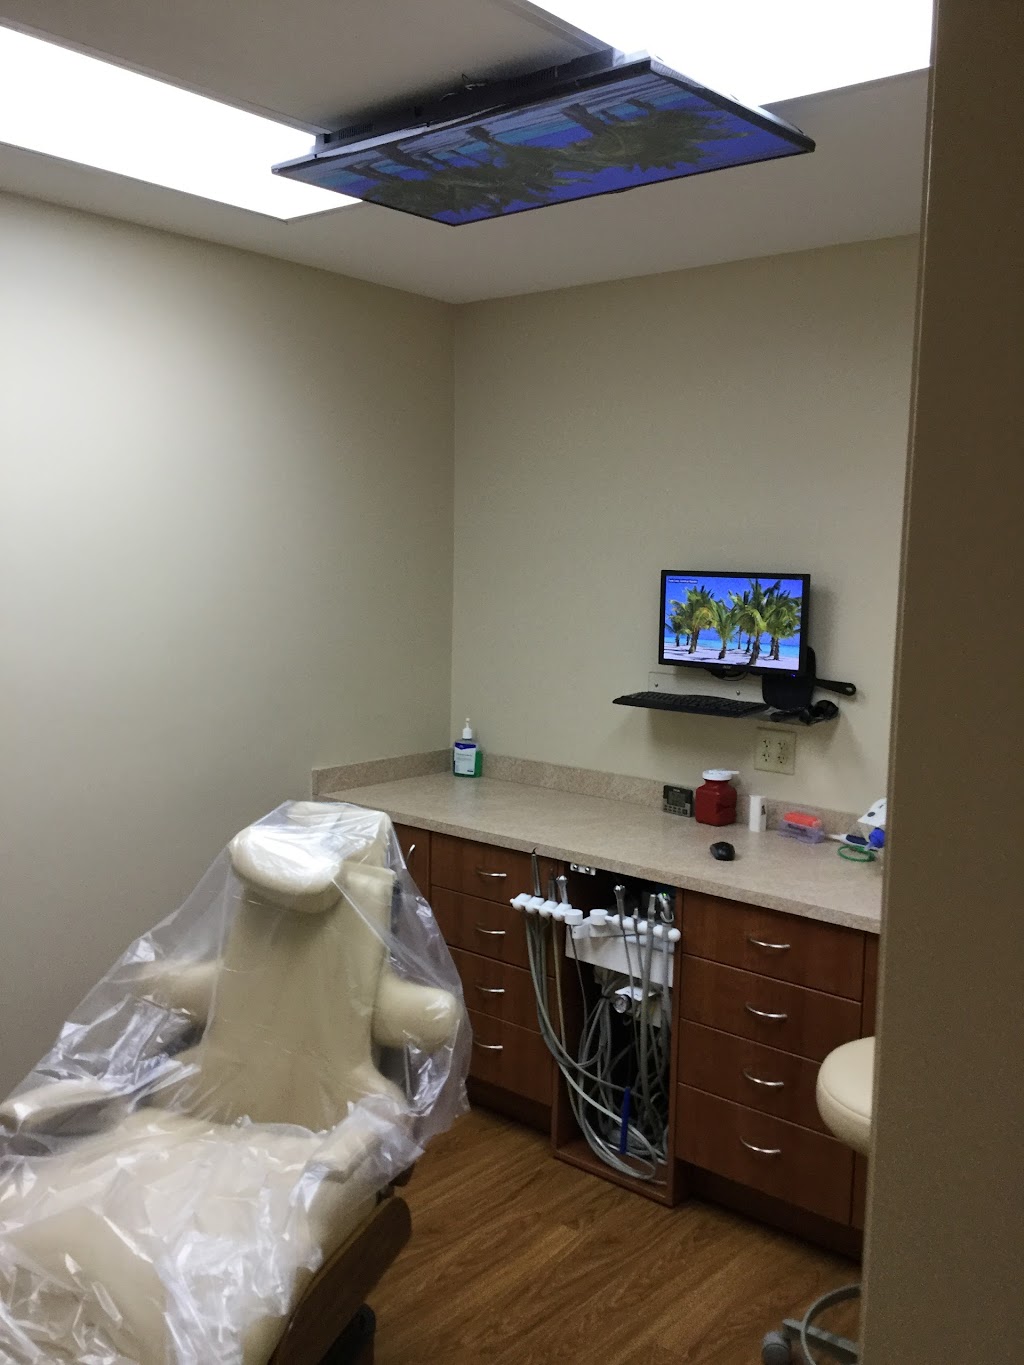 Milton Family Dentistry | 311 Parkview Dr, Milton, WI 53563, USA | Phone: (608) 868-4462